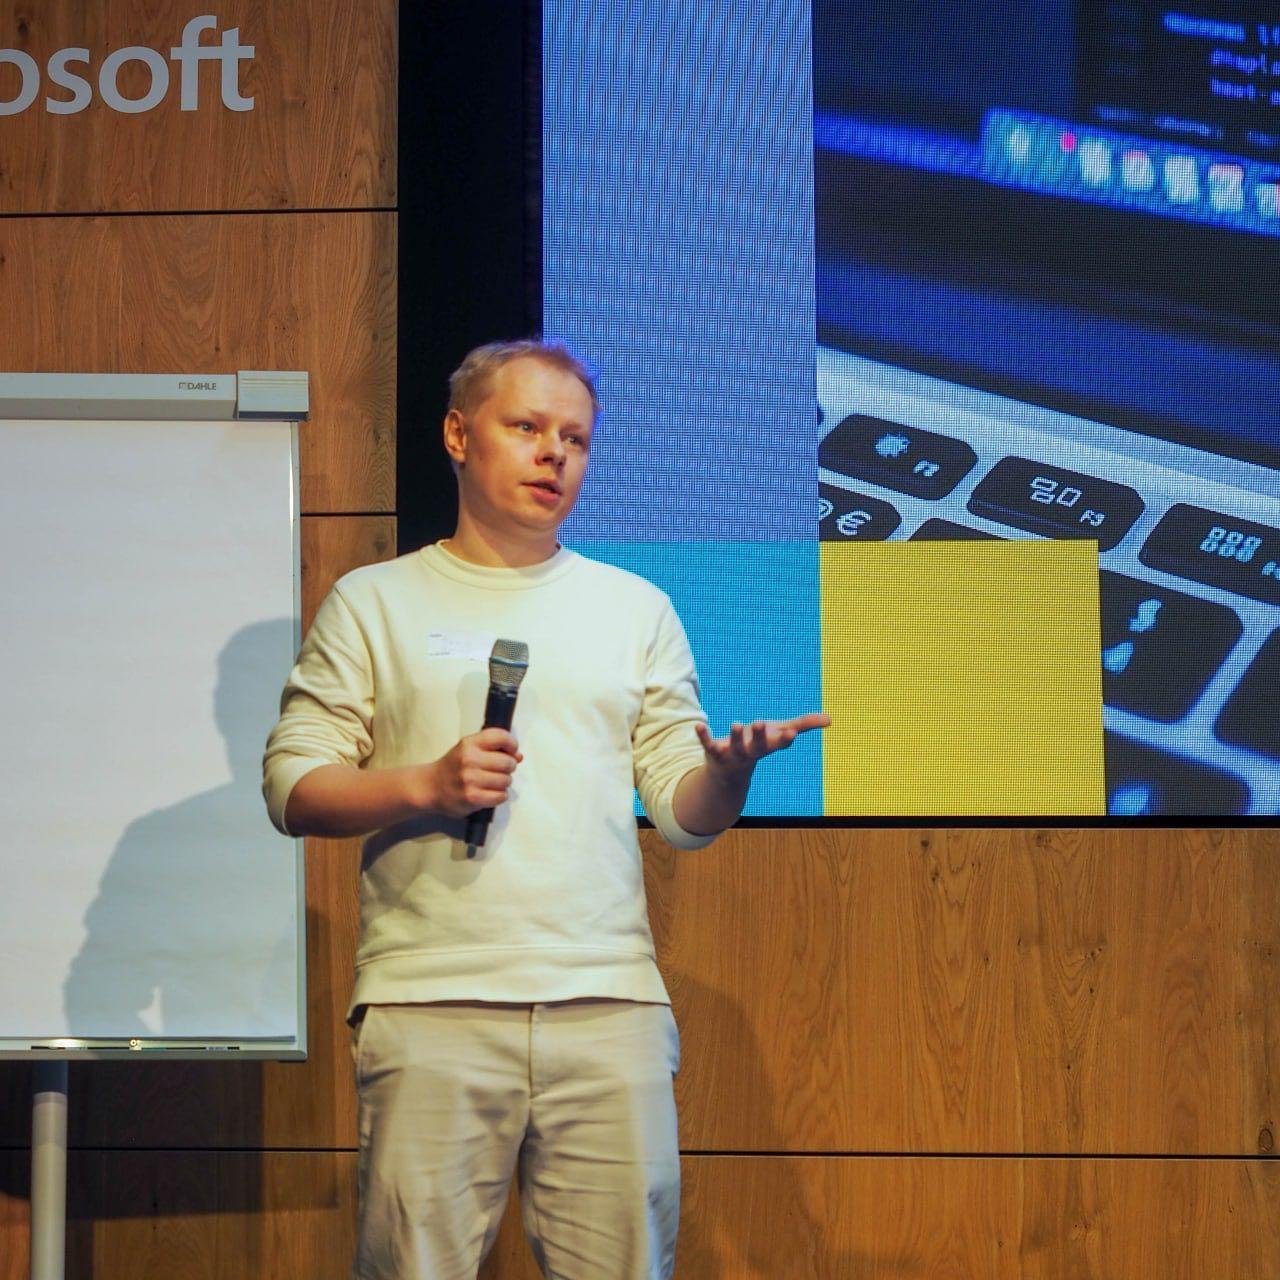 Я на сцене Microsoft Atrium в режиме flight mode, потому что капец как боюсь сцены и выступлений